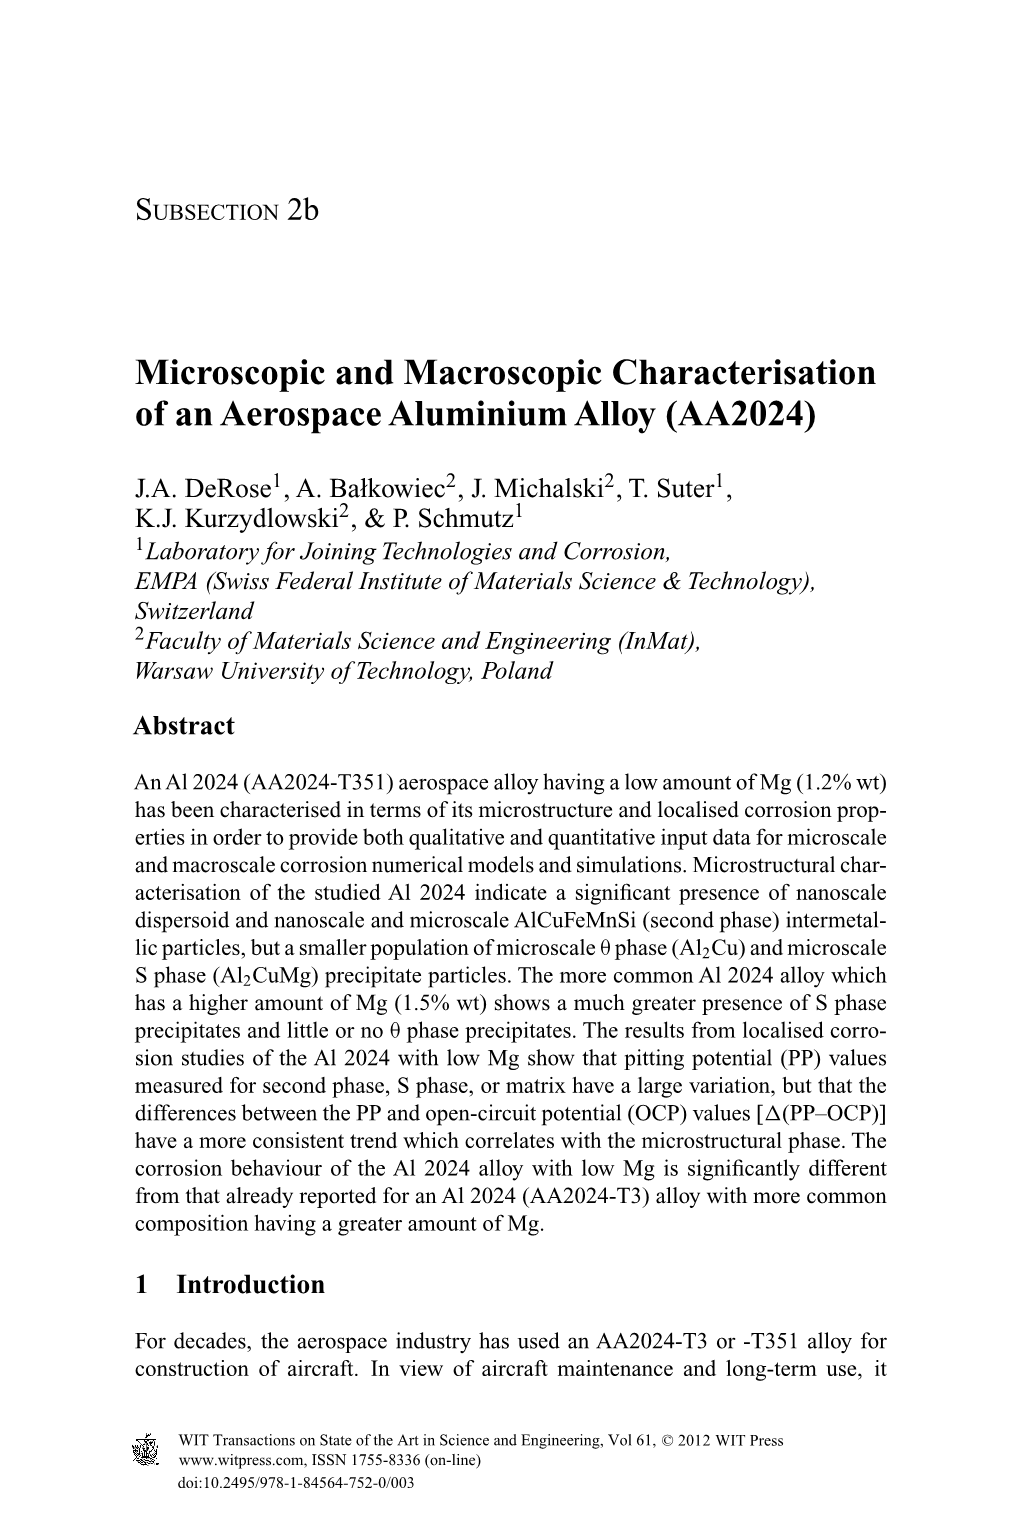 Microscopic and Macroscopic Characterisation of an Aerospace Aluminium Alloy (AA2024)